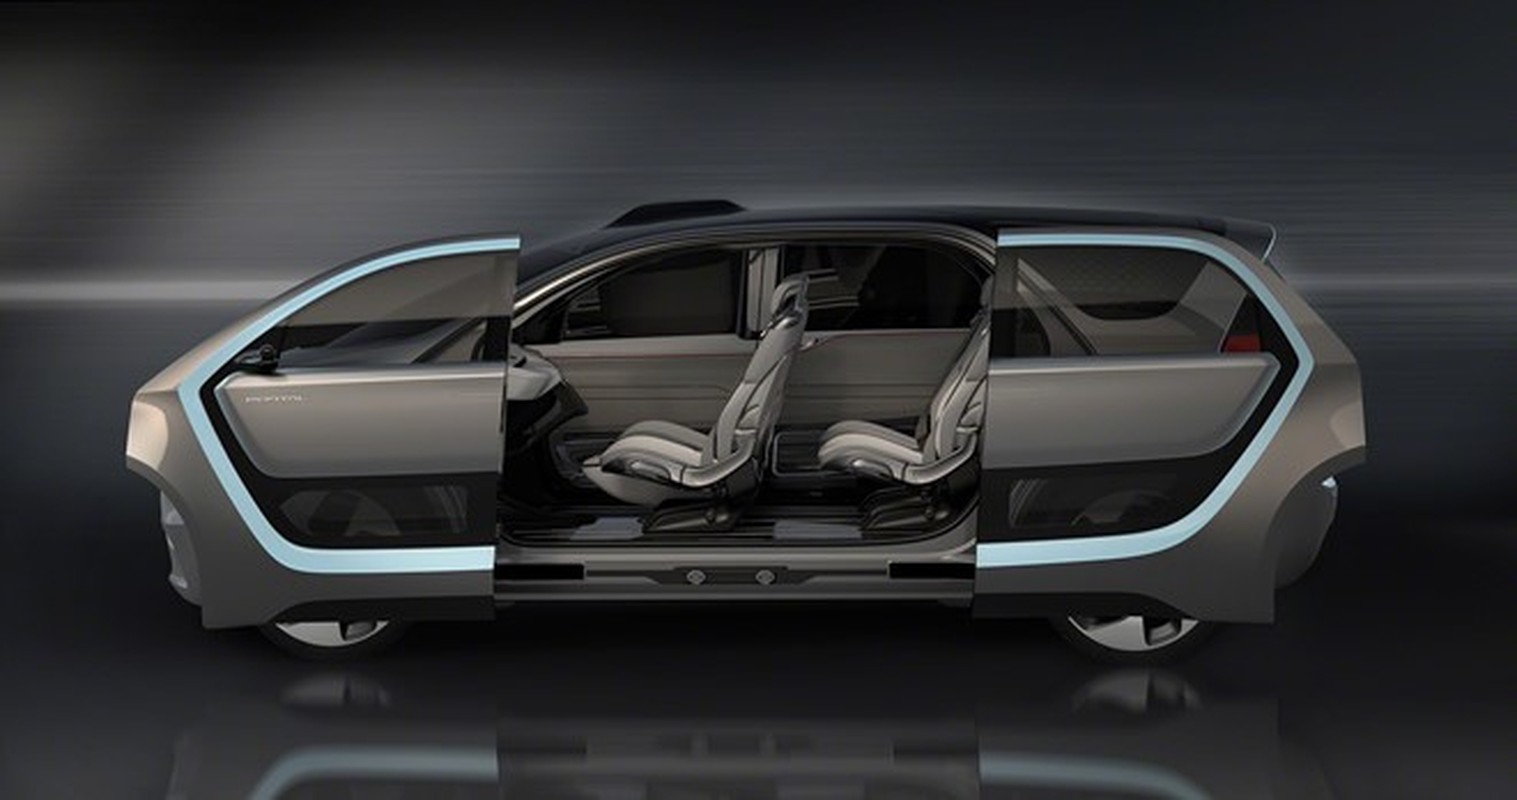 Chrysler gioi thieu xe dien thong minh Portal Concept-Hinh-10